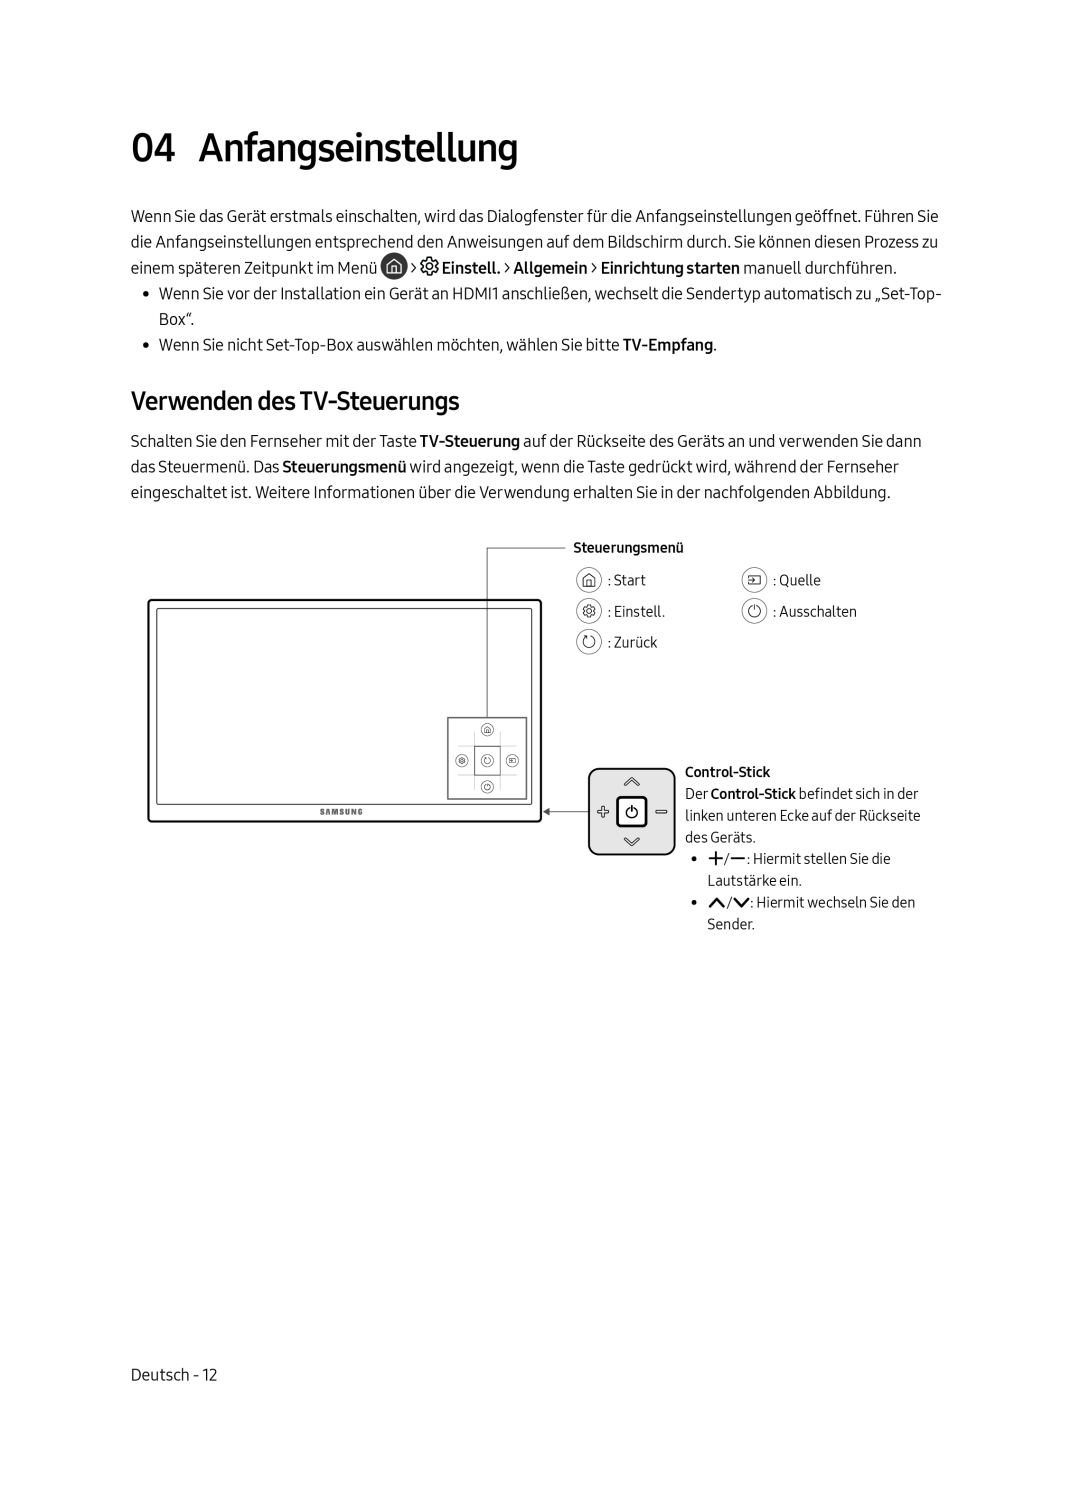 Samsung UE55MU6179UXZG, UE65MU6179UXZG, UE50MU6179UXZG, UE49MU6179UXZG manual Anfangseinstellung, Verwenden des TV-Steuerungs 